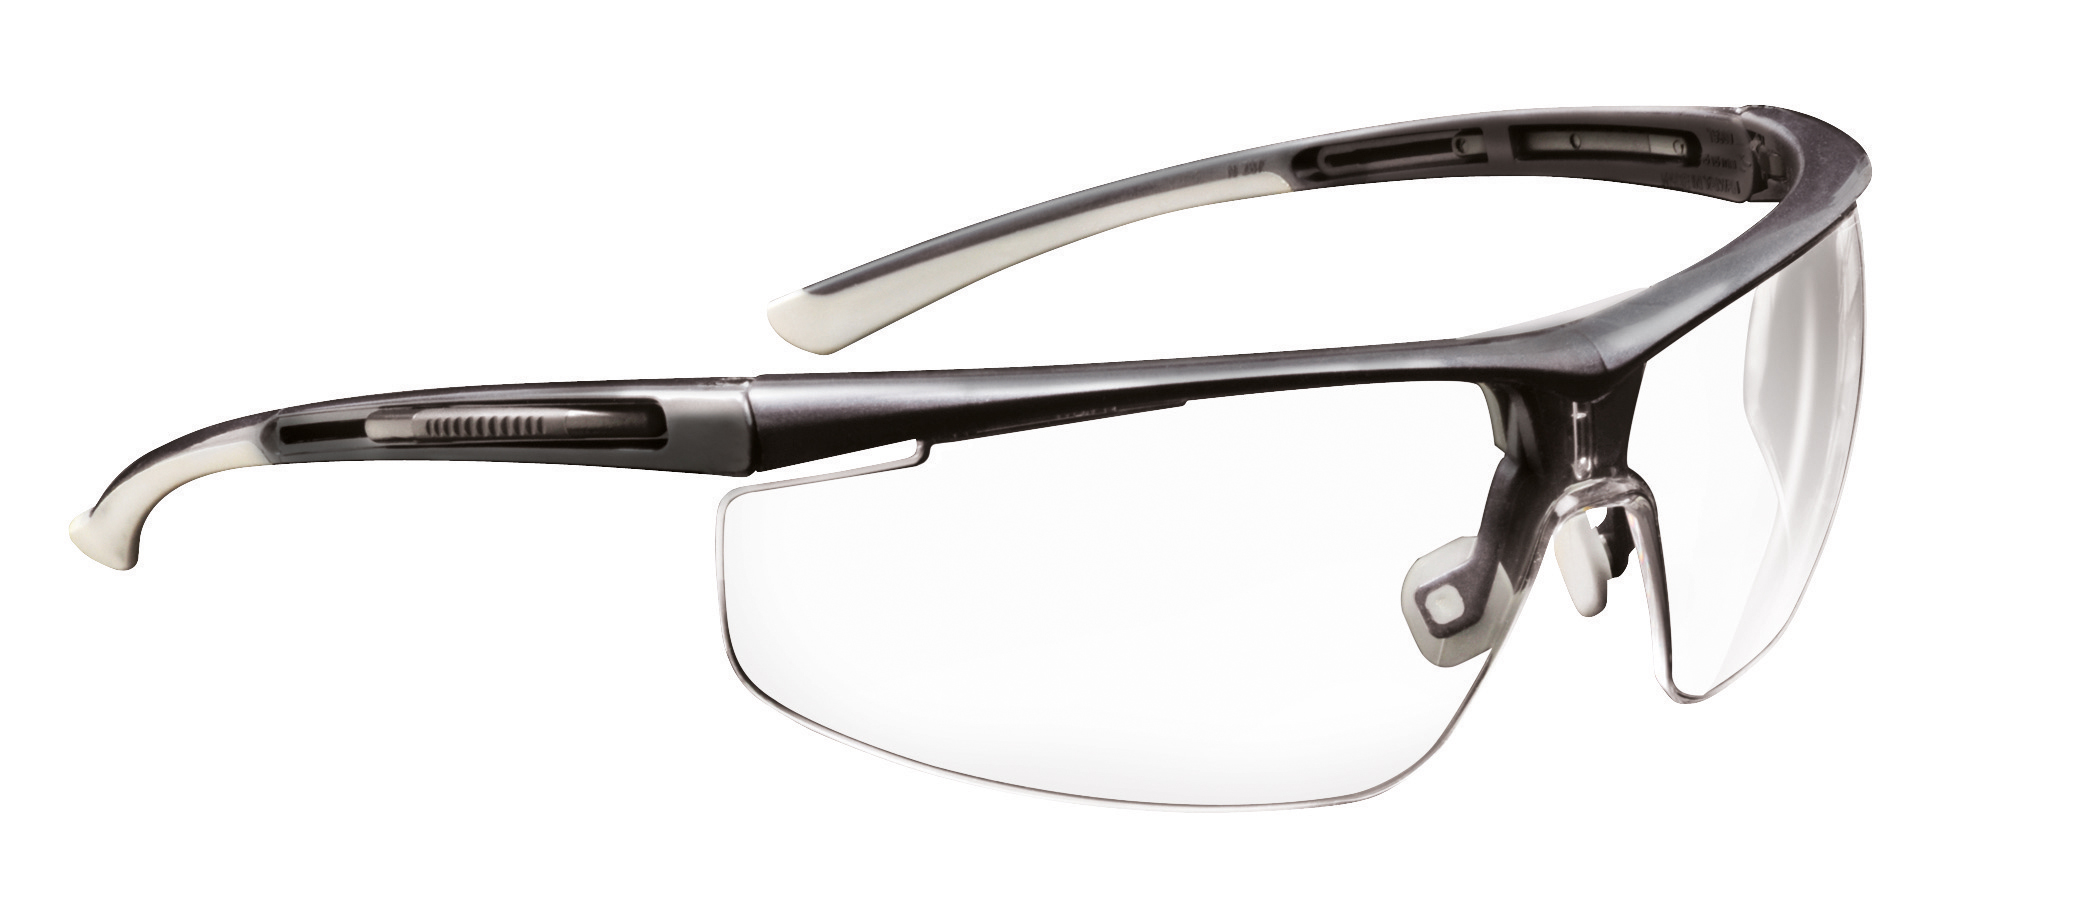 Благодаря каким решениям защитные очки Honeywell Adaptec являются таким исключительно эффективным защитным средством